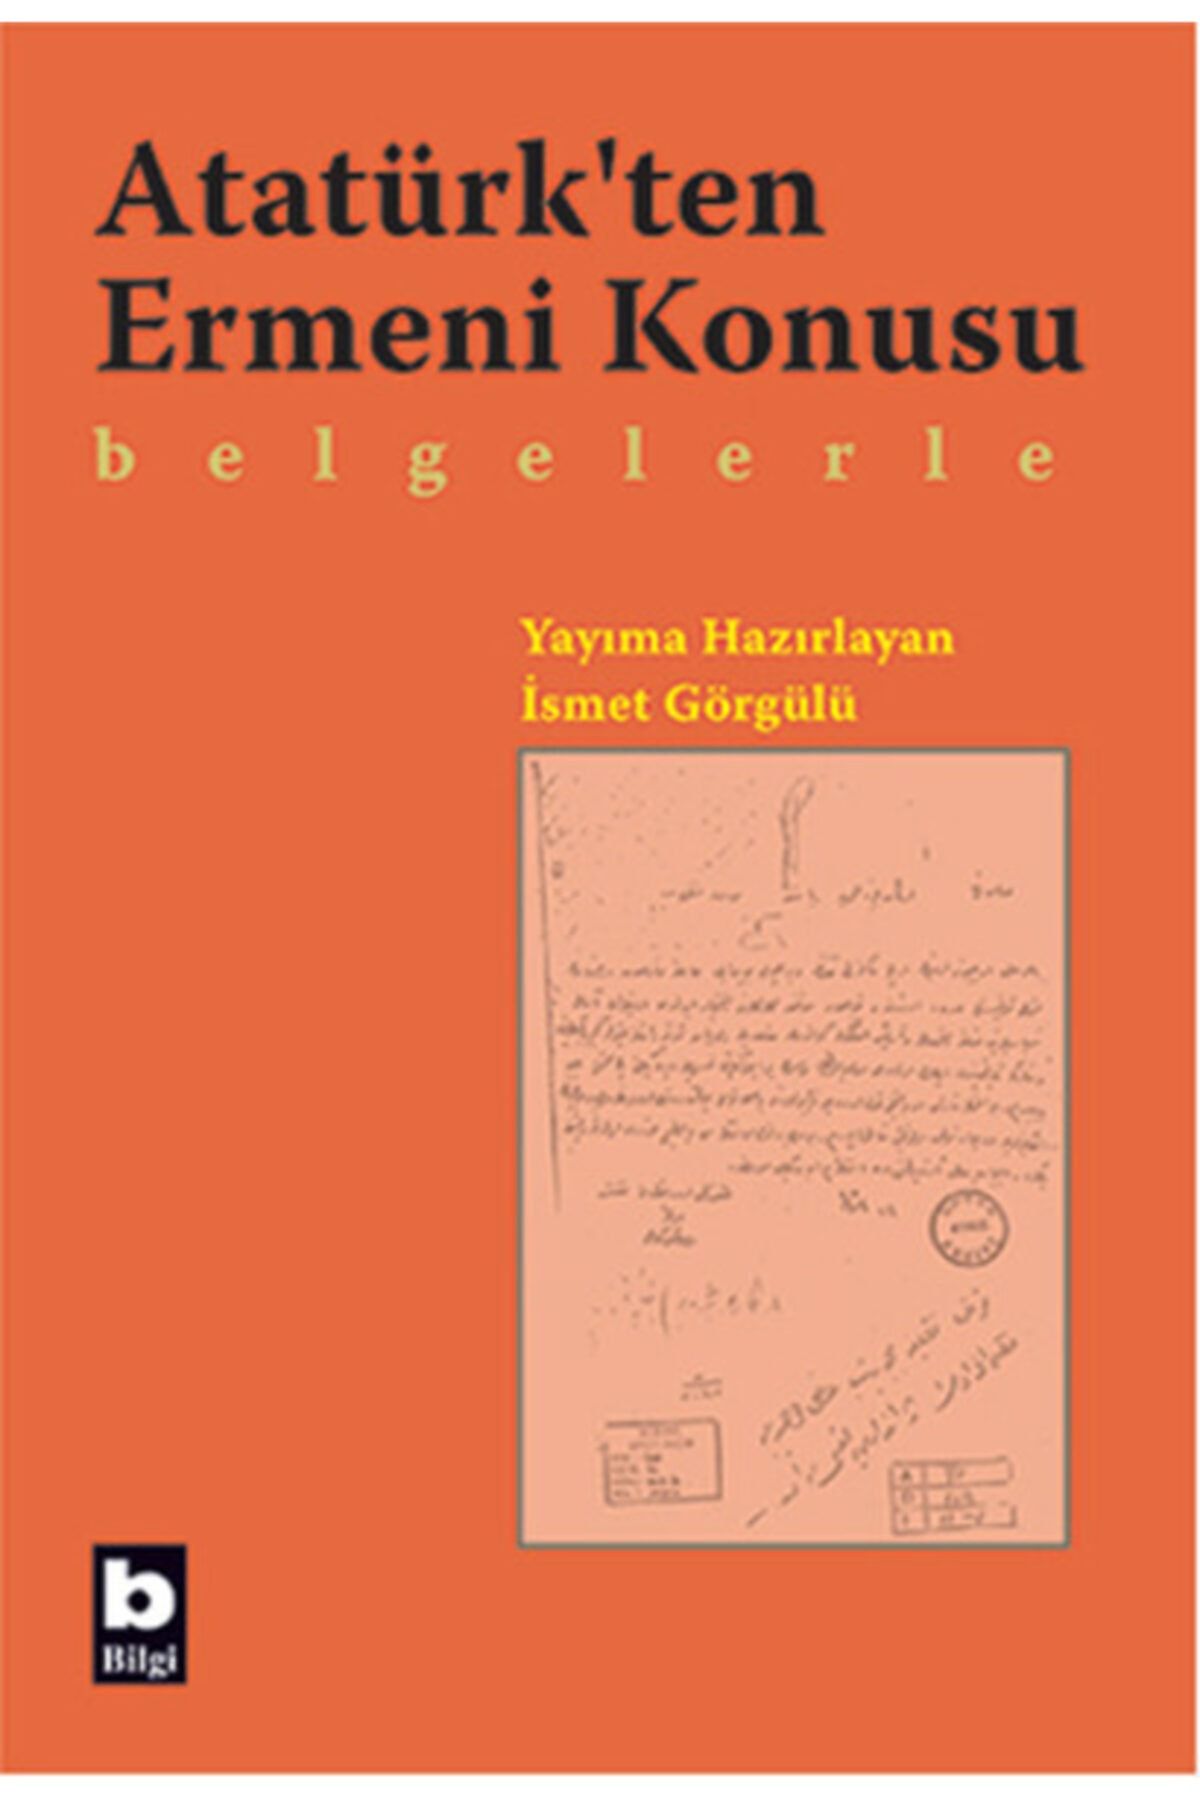 Bilgi Yayınları Atatürk'ten Ermeni Konusu Belgelerle